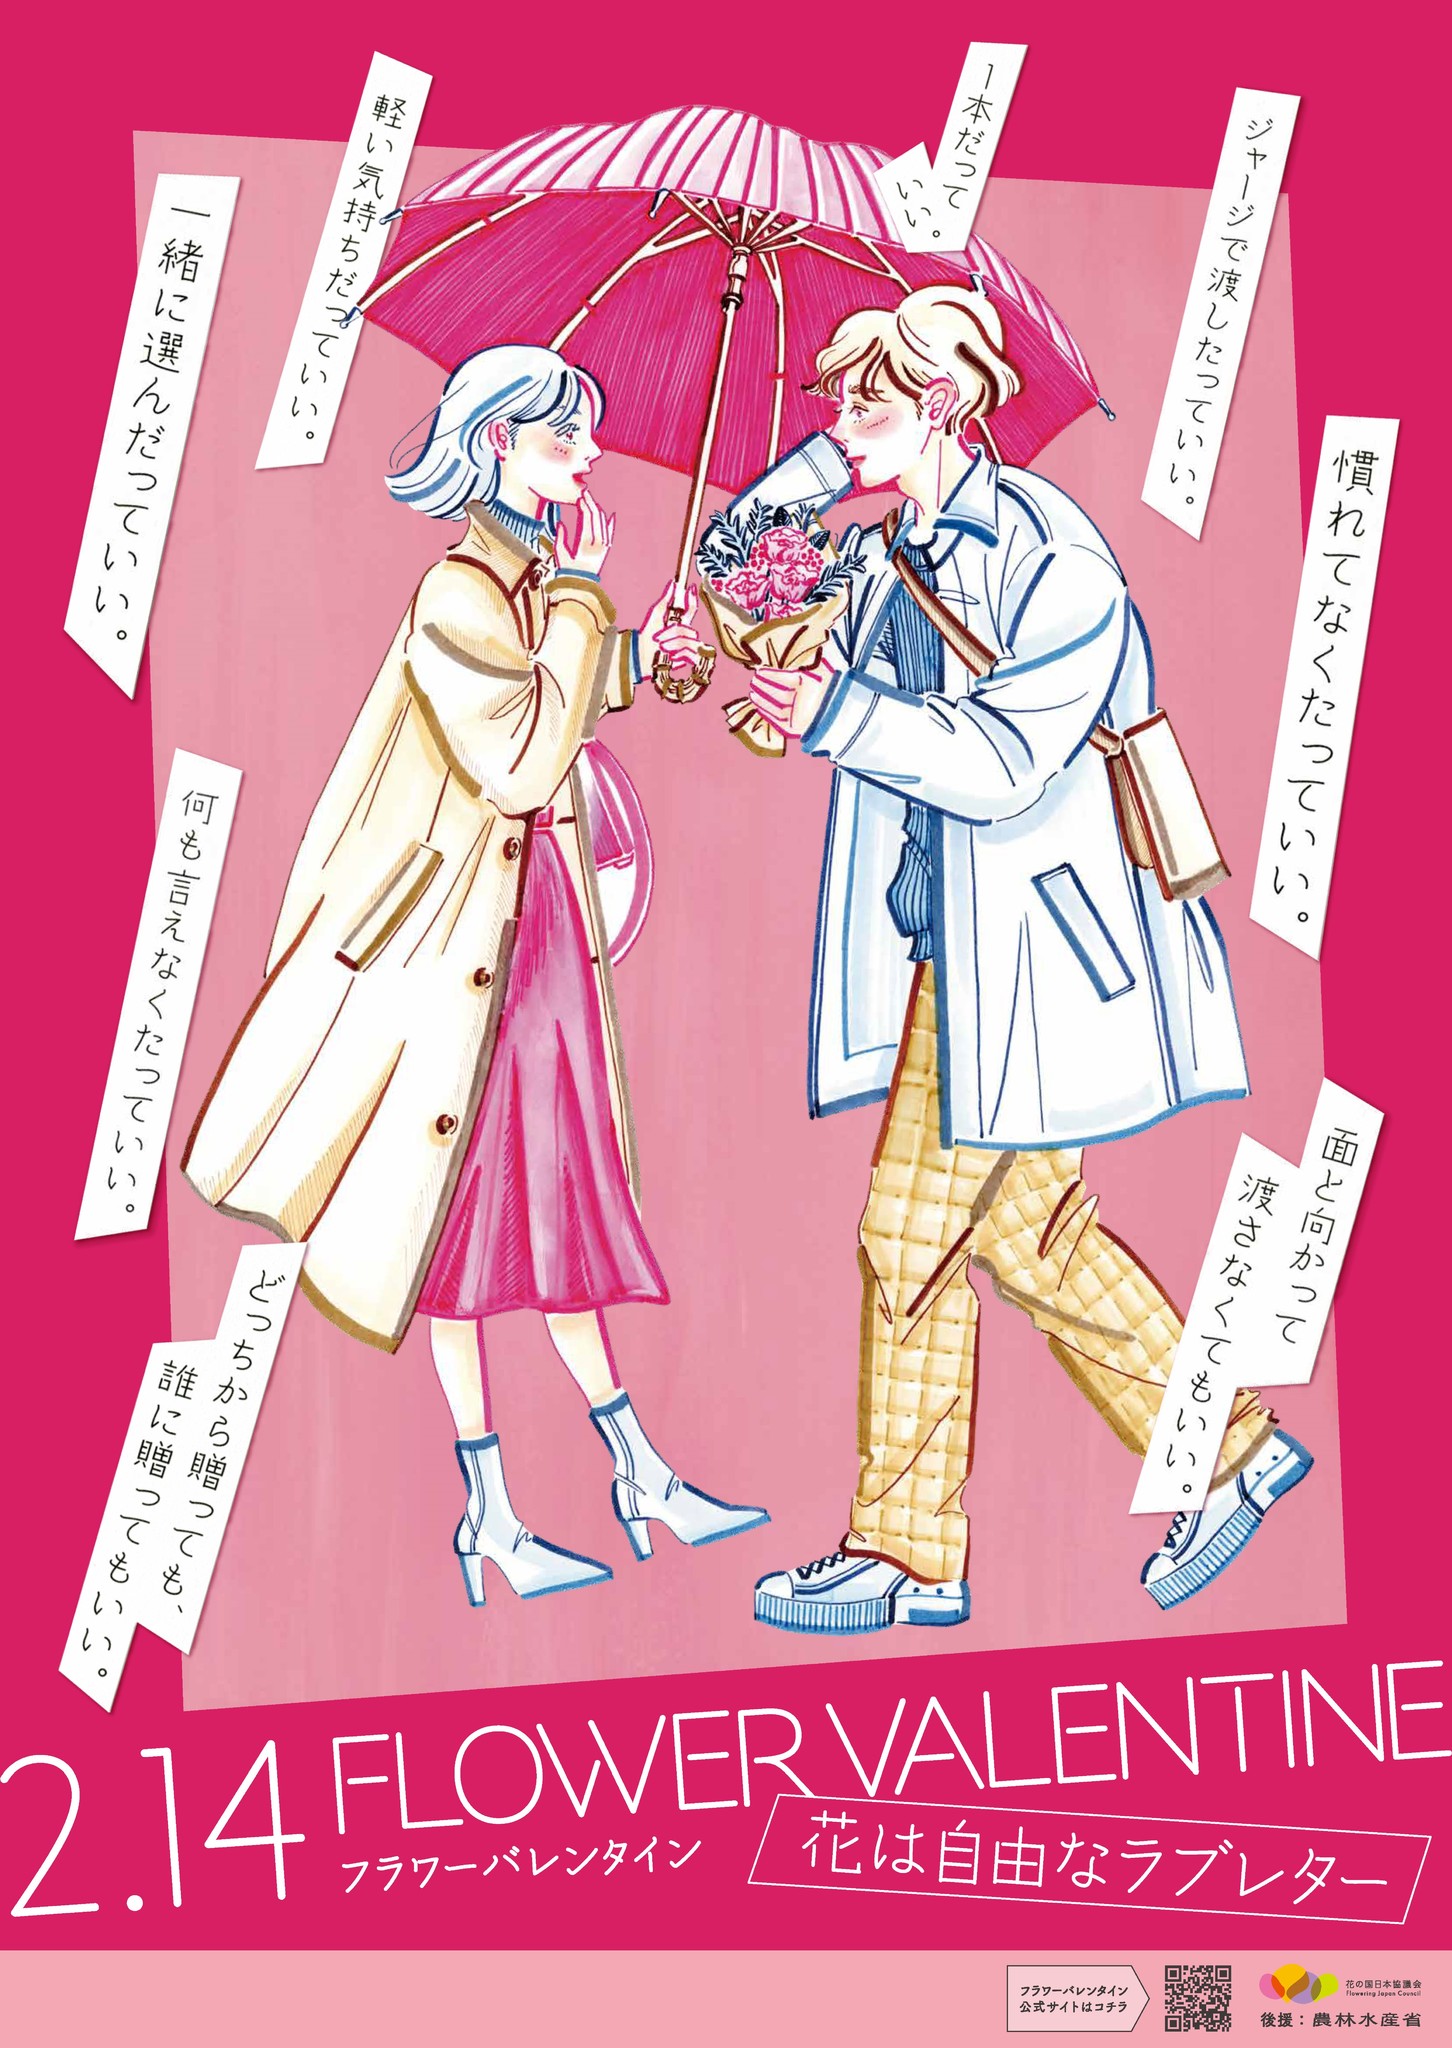 フラワーバレンタイン21 公式サイトオープン 花は自由なラブレター さまざまな愛のかたちを 花 で伝えよう もっと気軽で自由な花贈りを若年層にも訴求 一般社団法人花の国日本協議会のプレスリリース